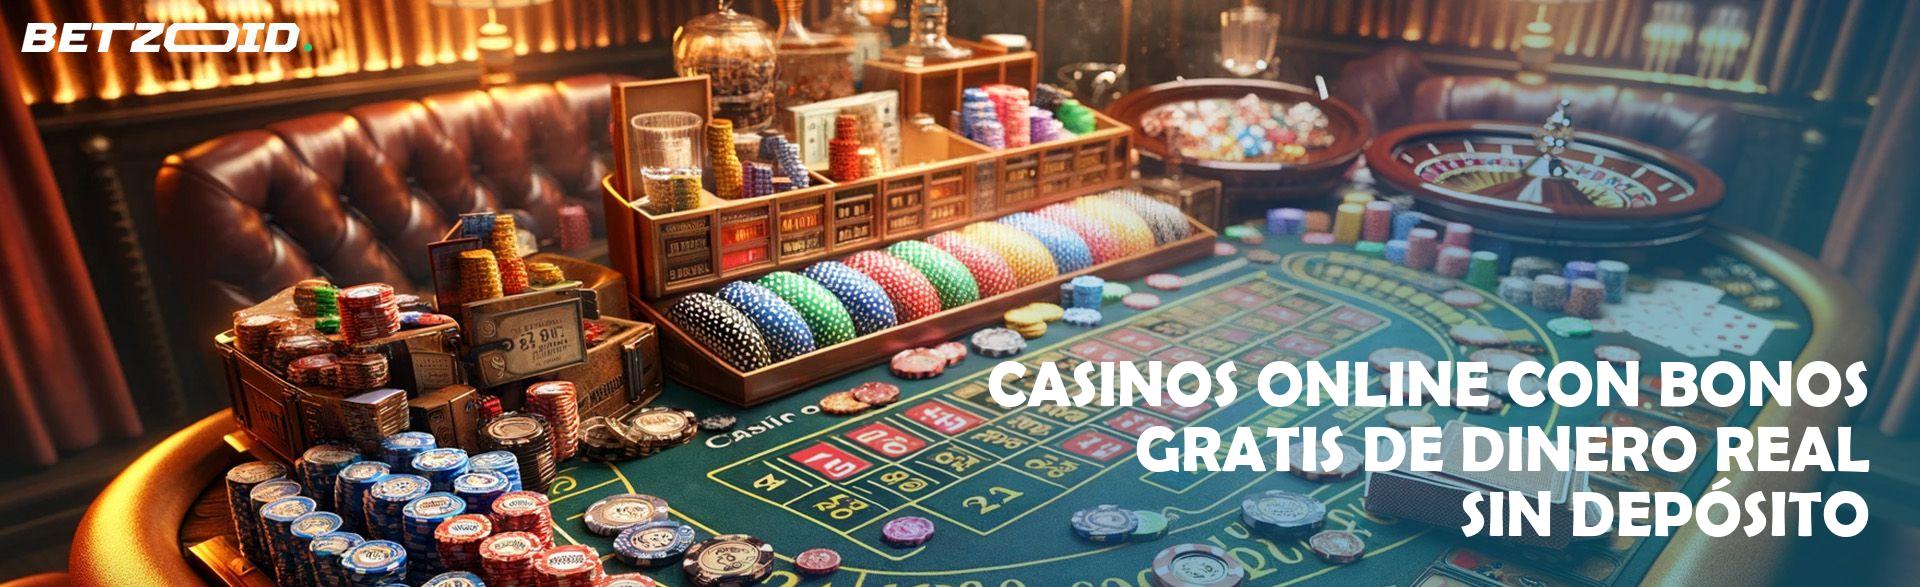 5 cosas que la gente odia Casino En Linea